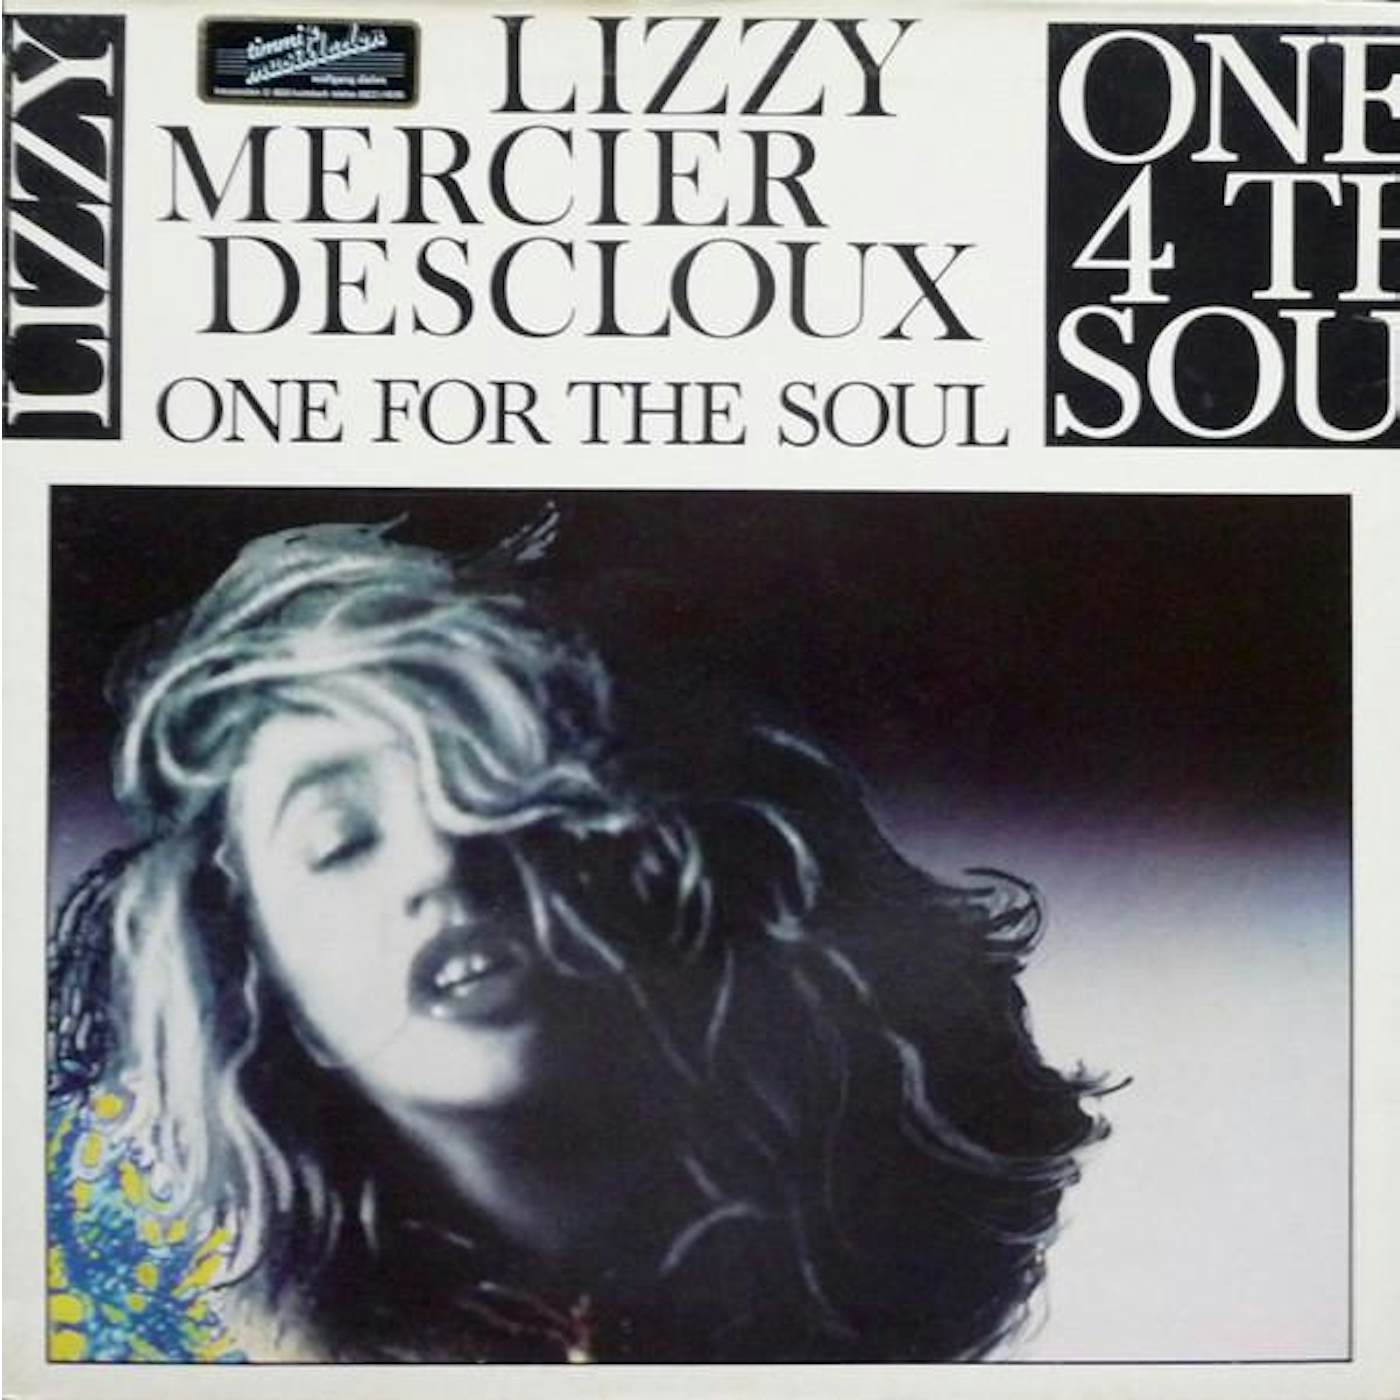 Lizzy Mercier Descloux ONE FOR THE SOUL Vinyl Record